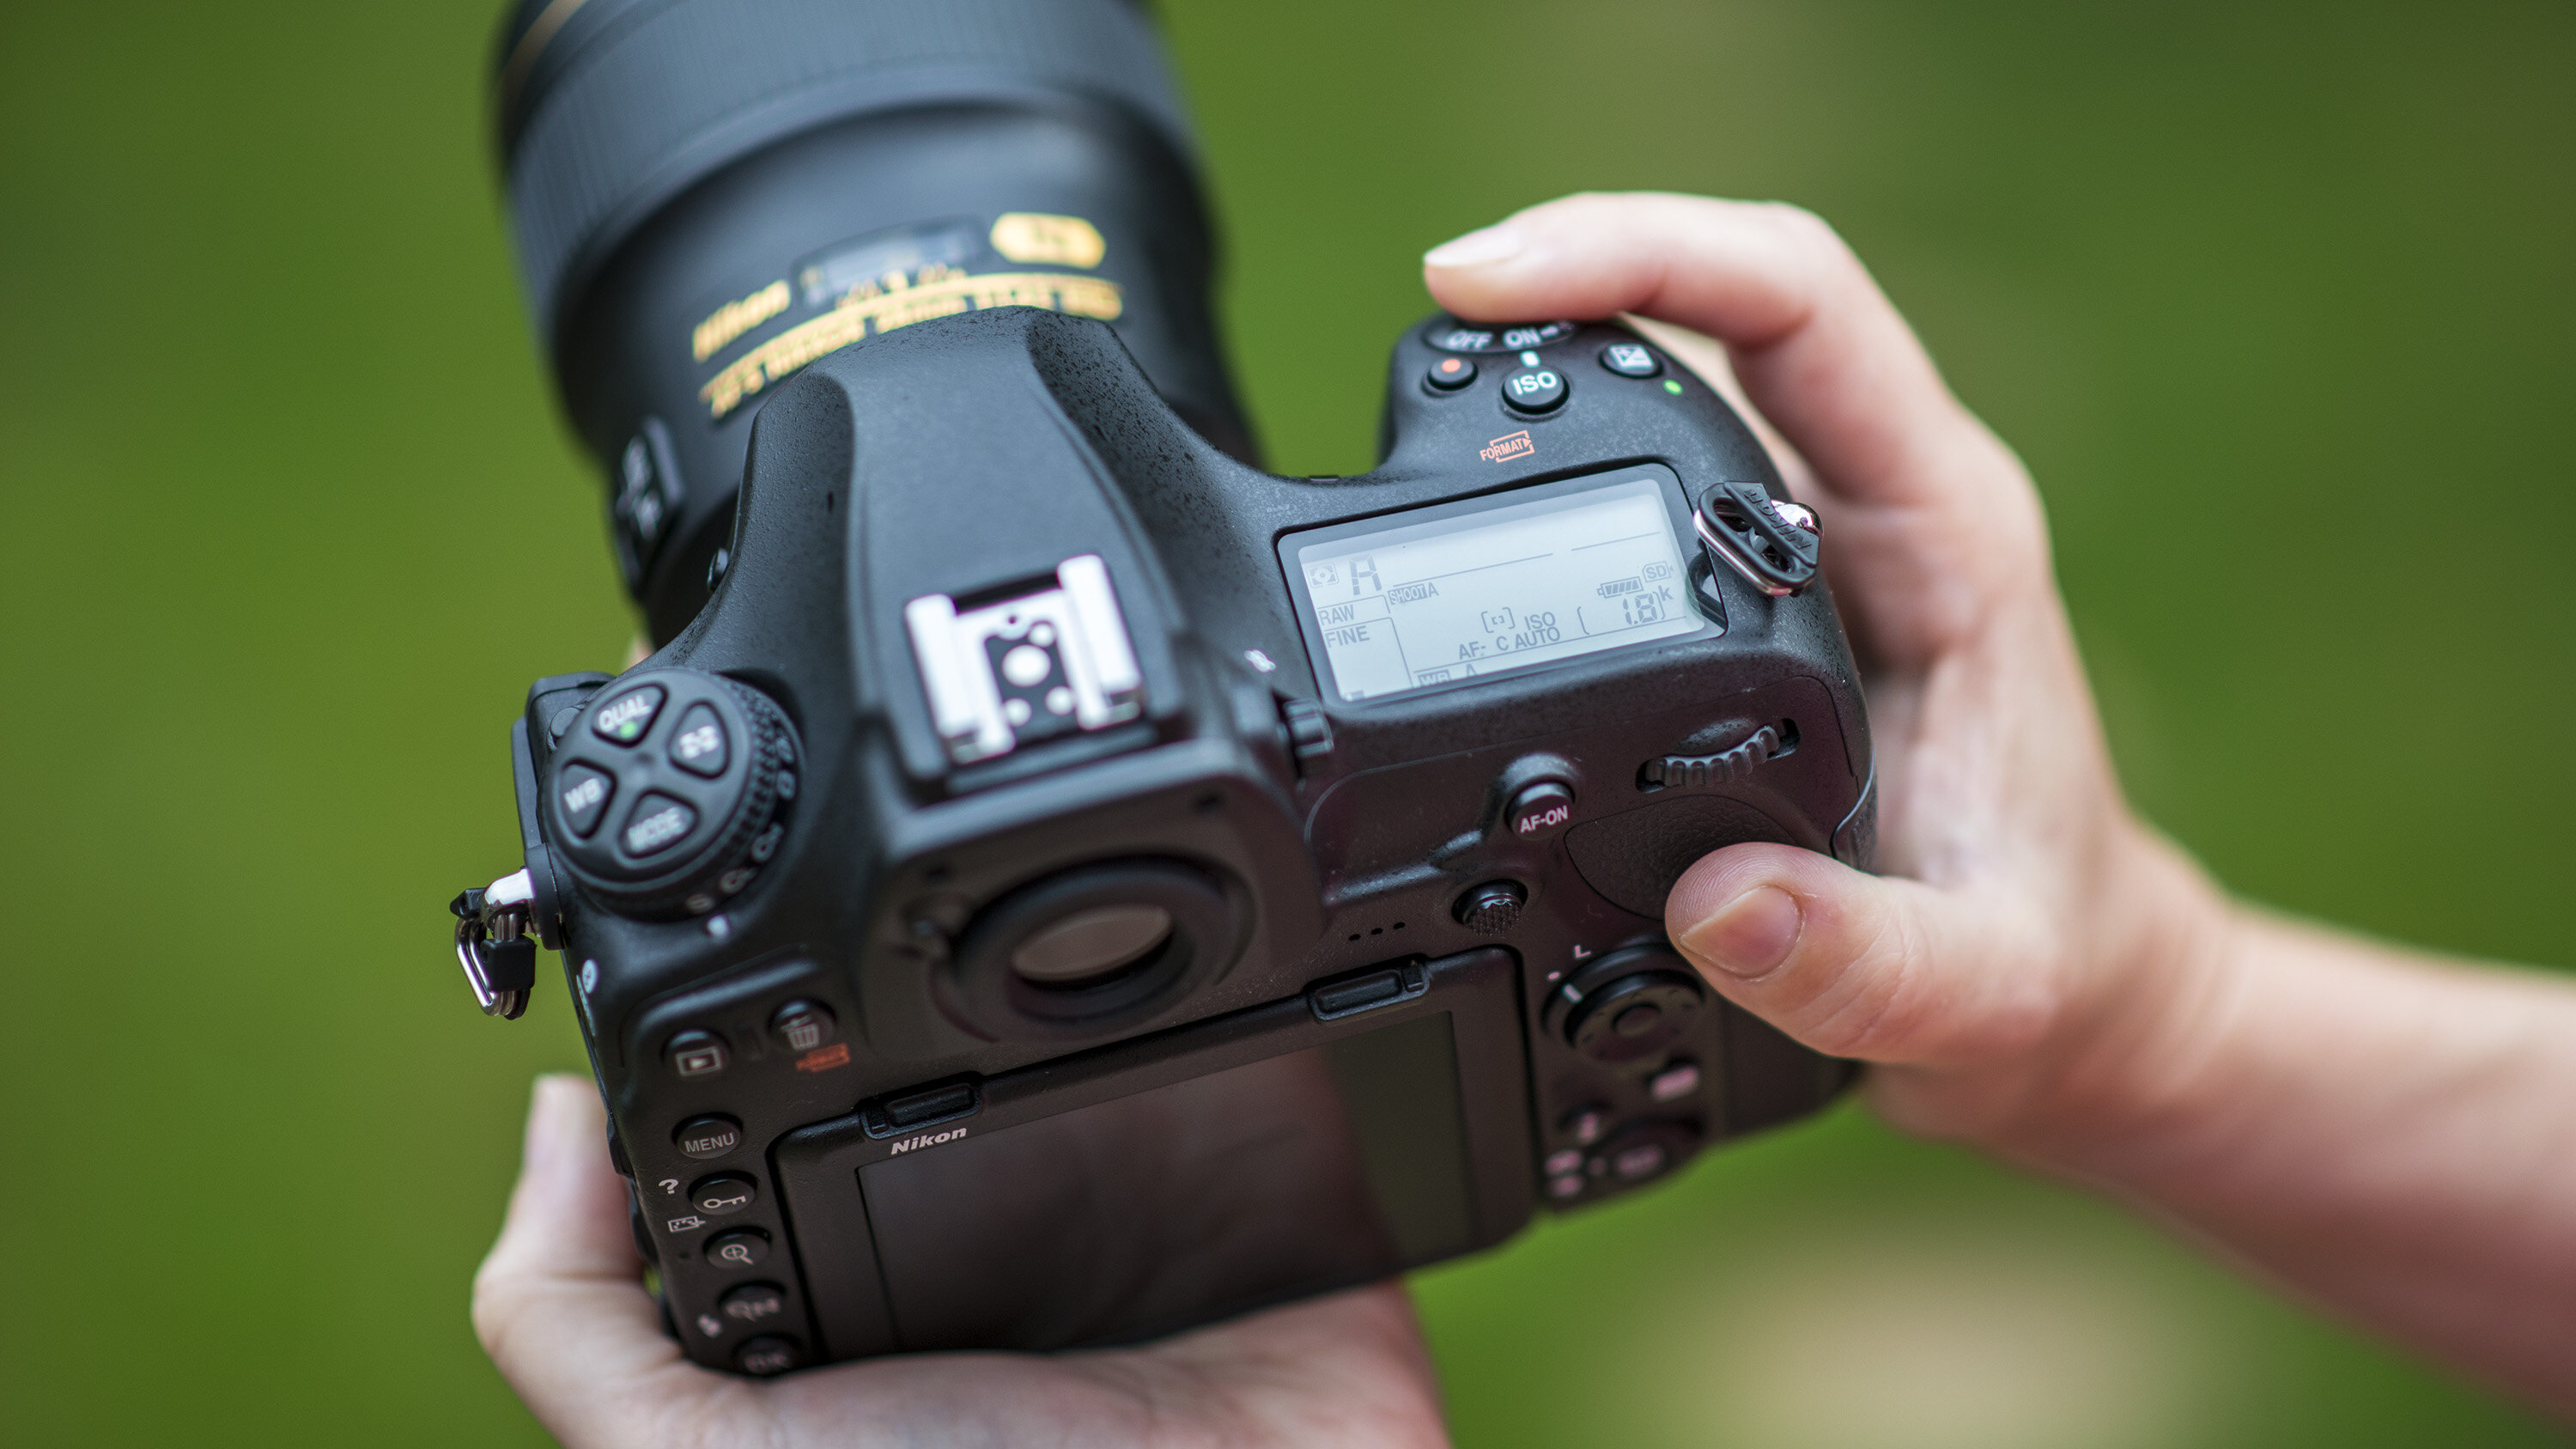 Tìm hiểu về các cách sử dụng và cài đặt Nikon cơ bản